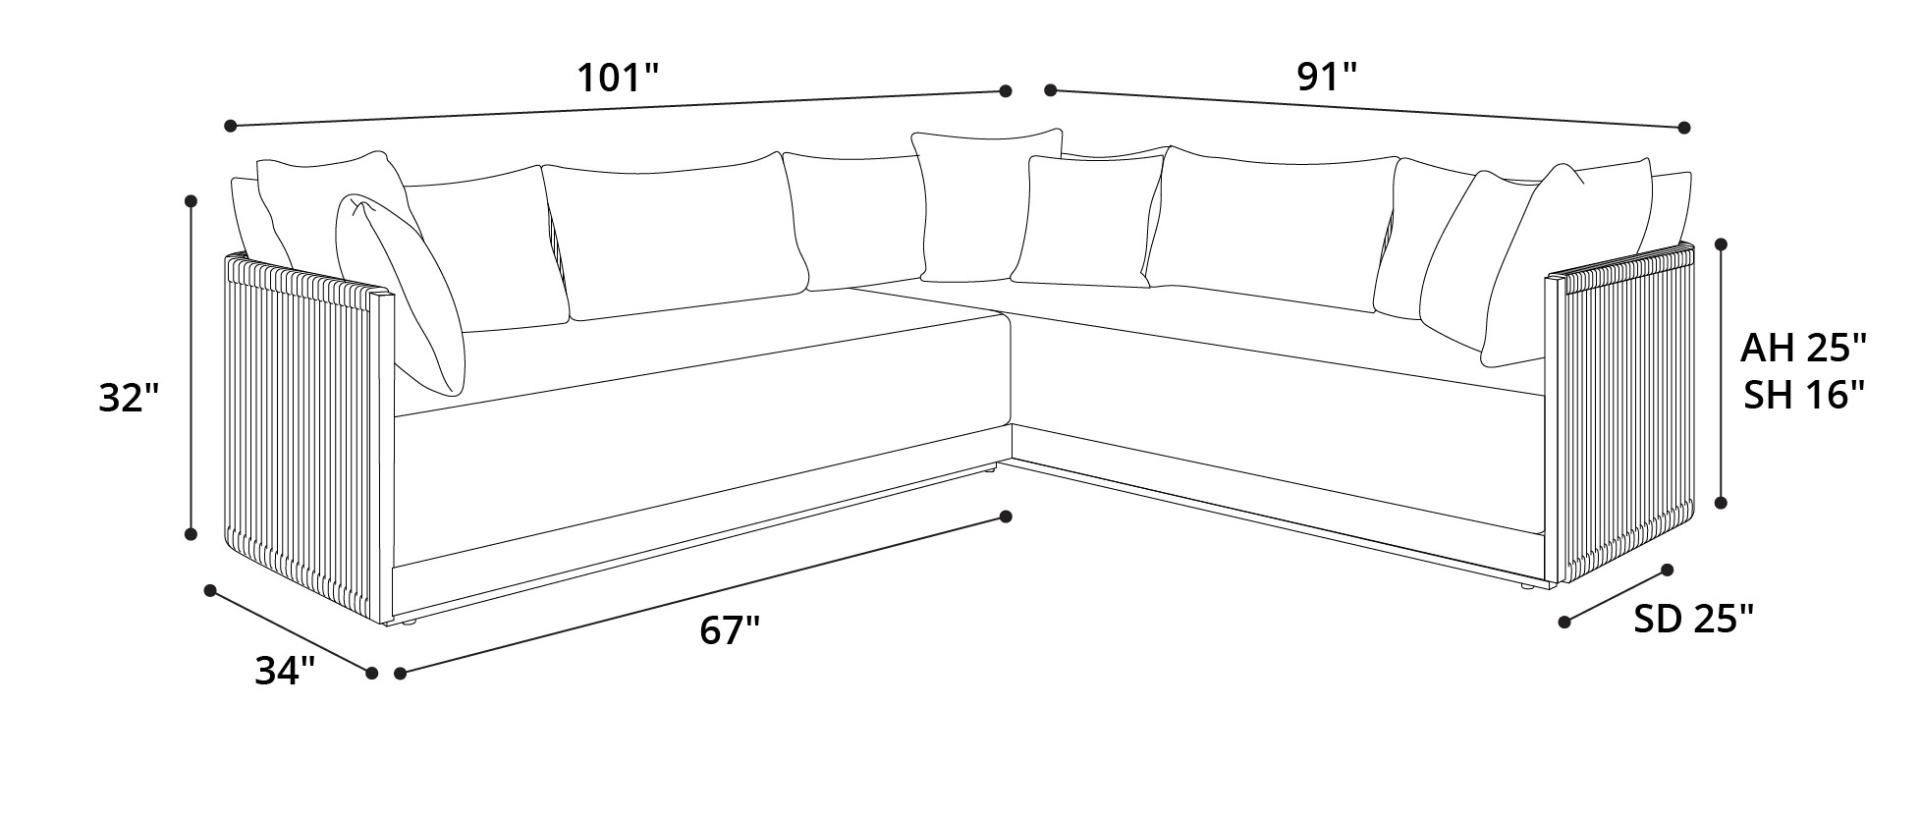 Haukland Corner Sectional Sofa Dimensions